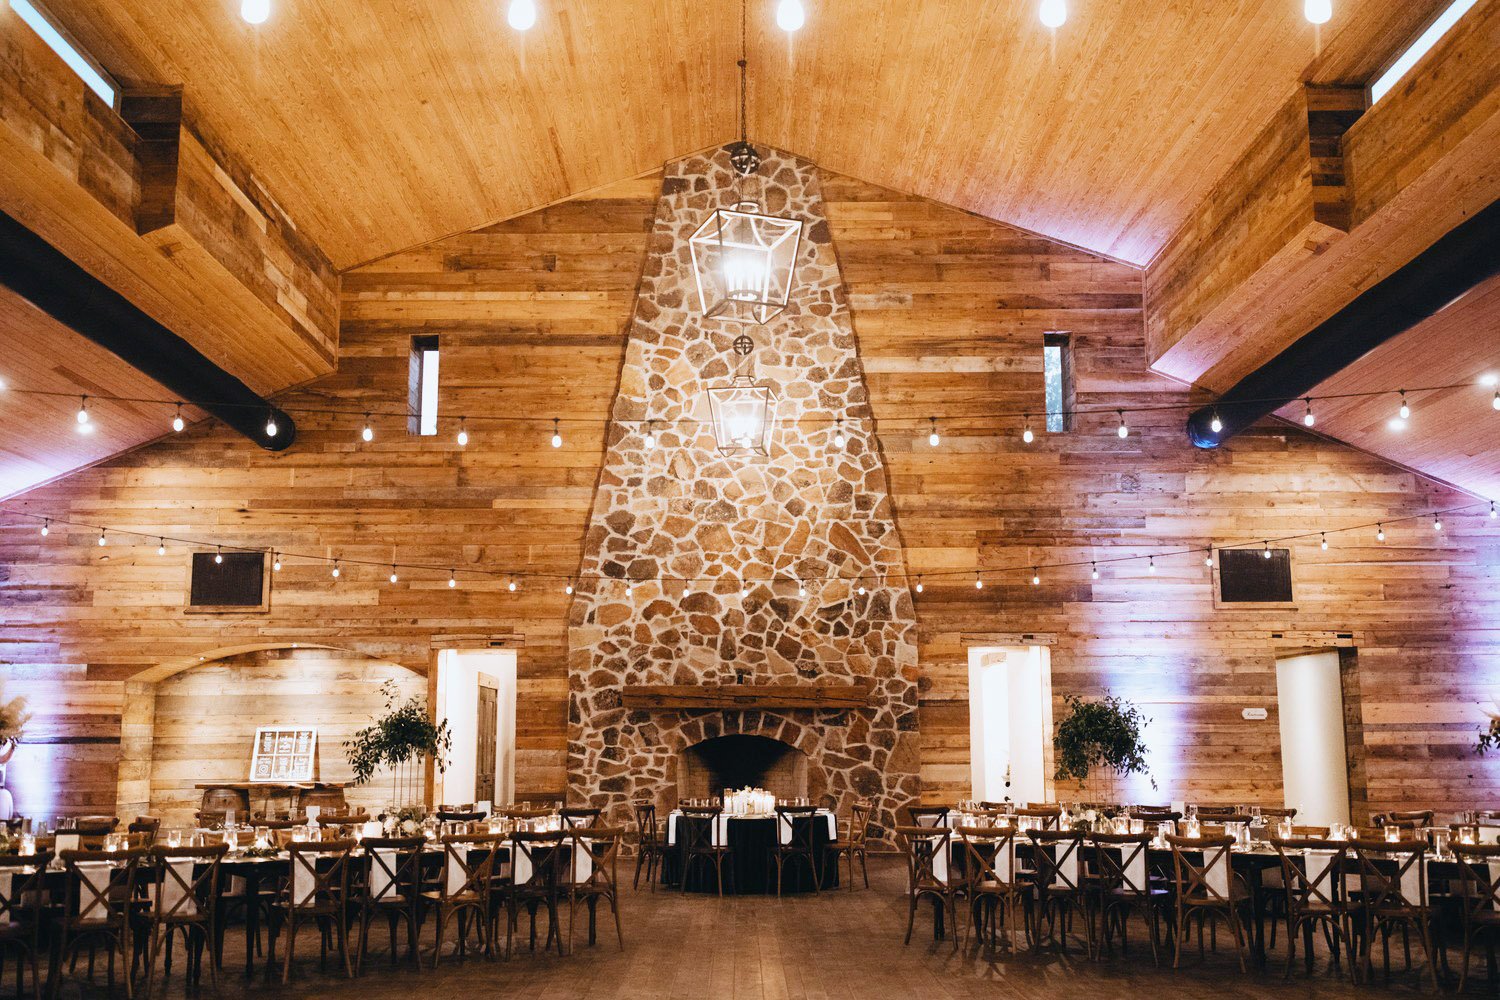 Texas Barn Weddings: Finding Your Dream Wedding Venue in New Ulm